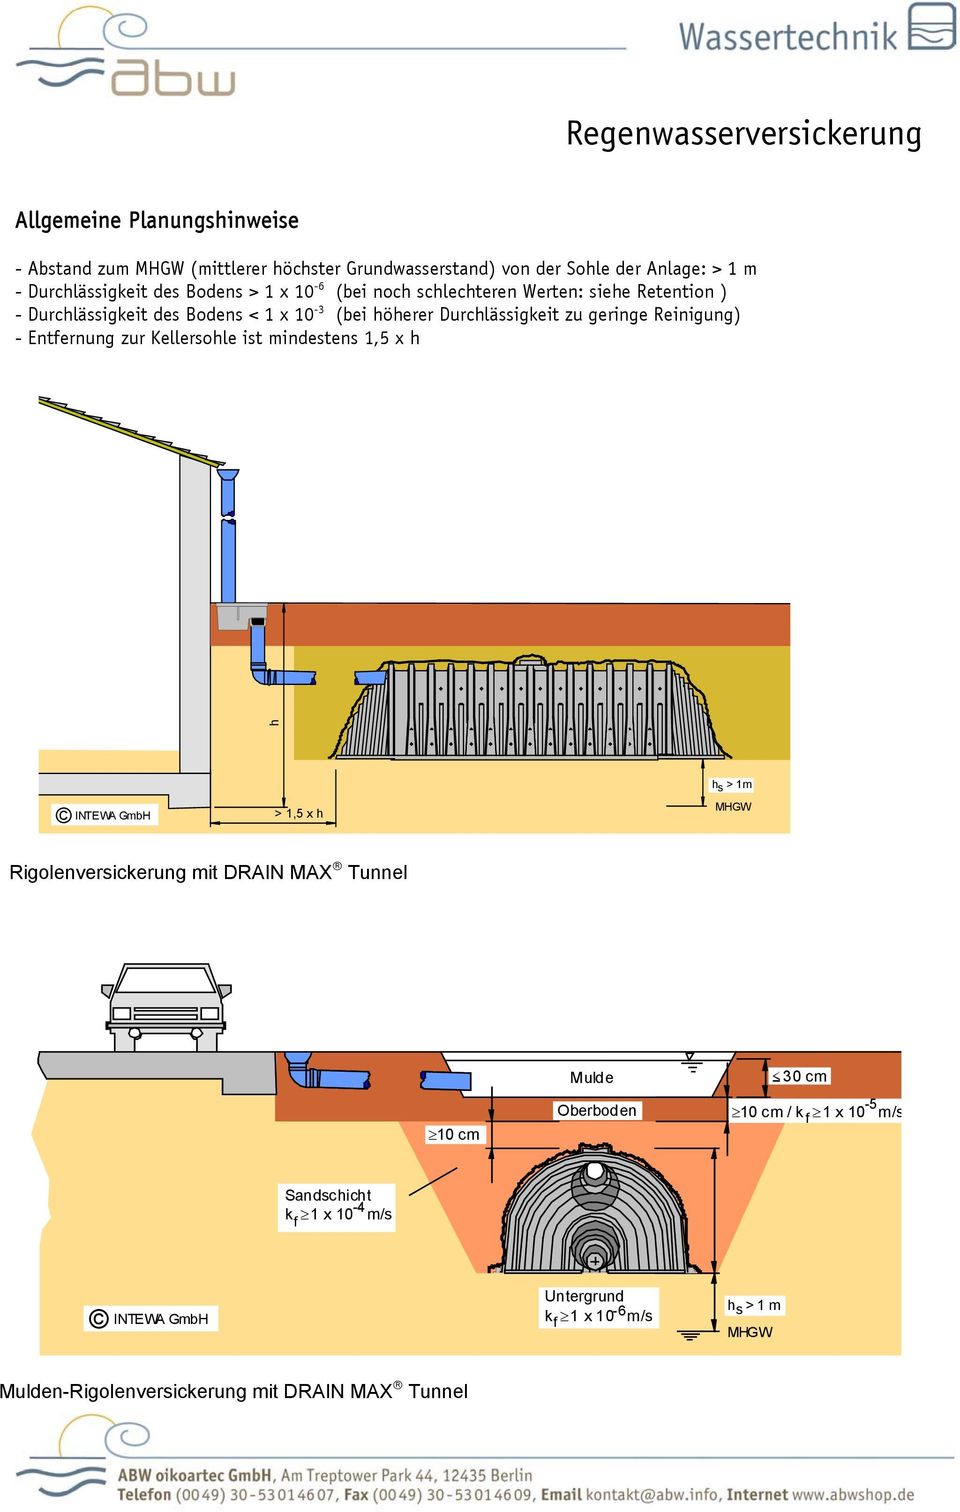 Entfernung zur Kellersohle ist mindestens 1,5 x h h INTEWA GmbH > 1,5 x h h s > 1m MHGW Rigolenversickerung mit DRAIN MAX Tunnel 10 cm Mulde Oberboden 30